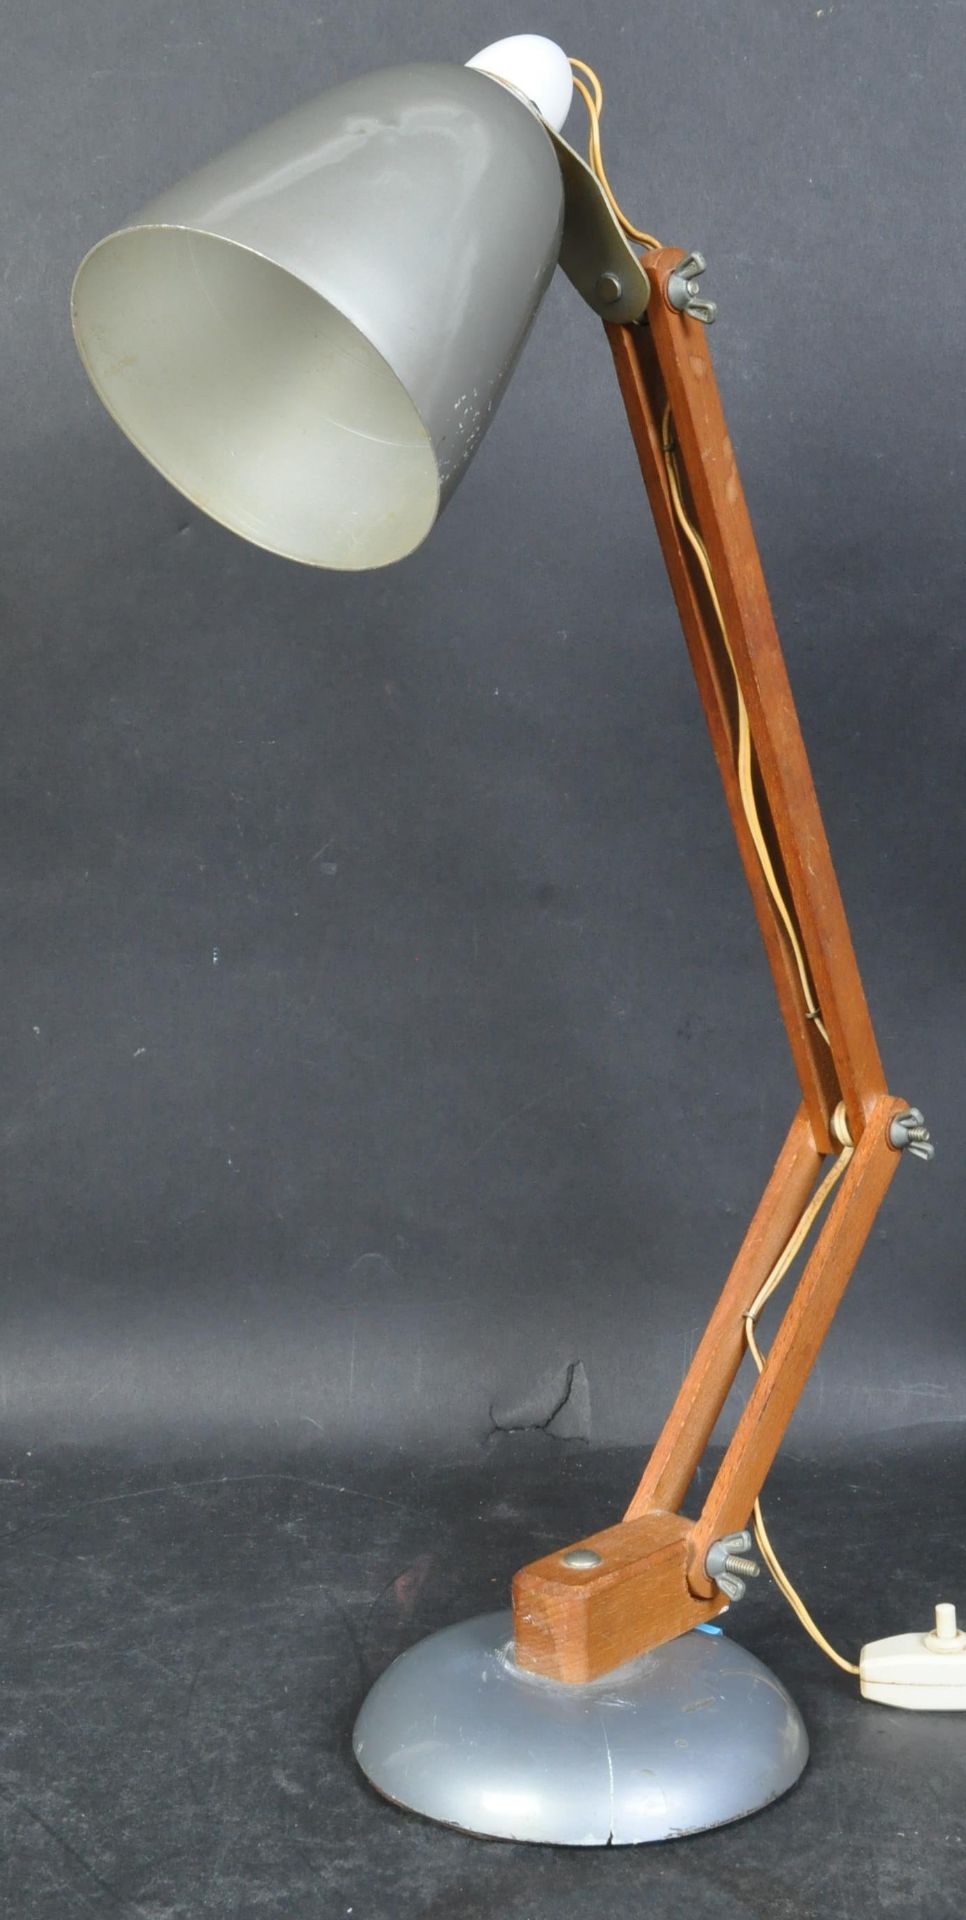 TERENCE CONRAN - HABITAT - MACLAMP - 1960'S DESK LAMP